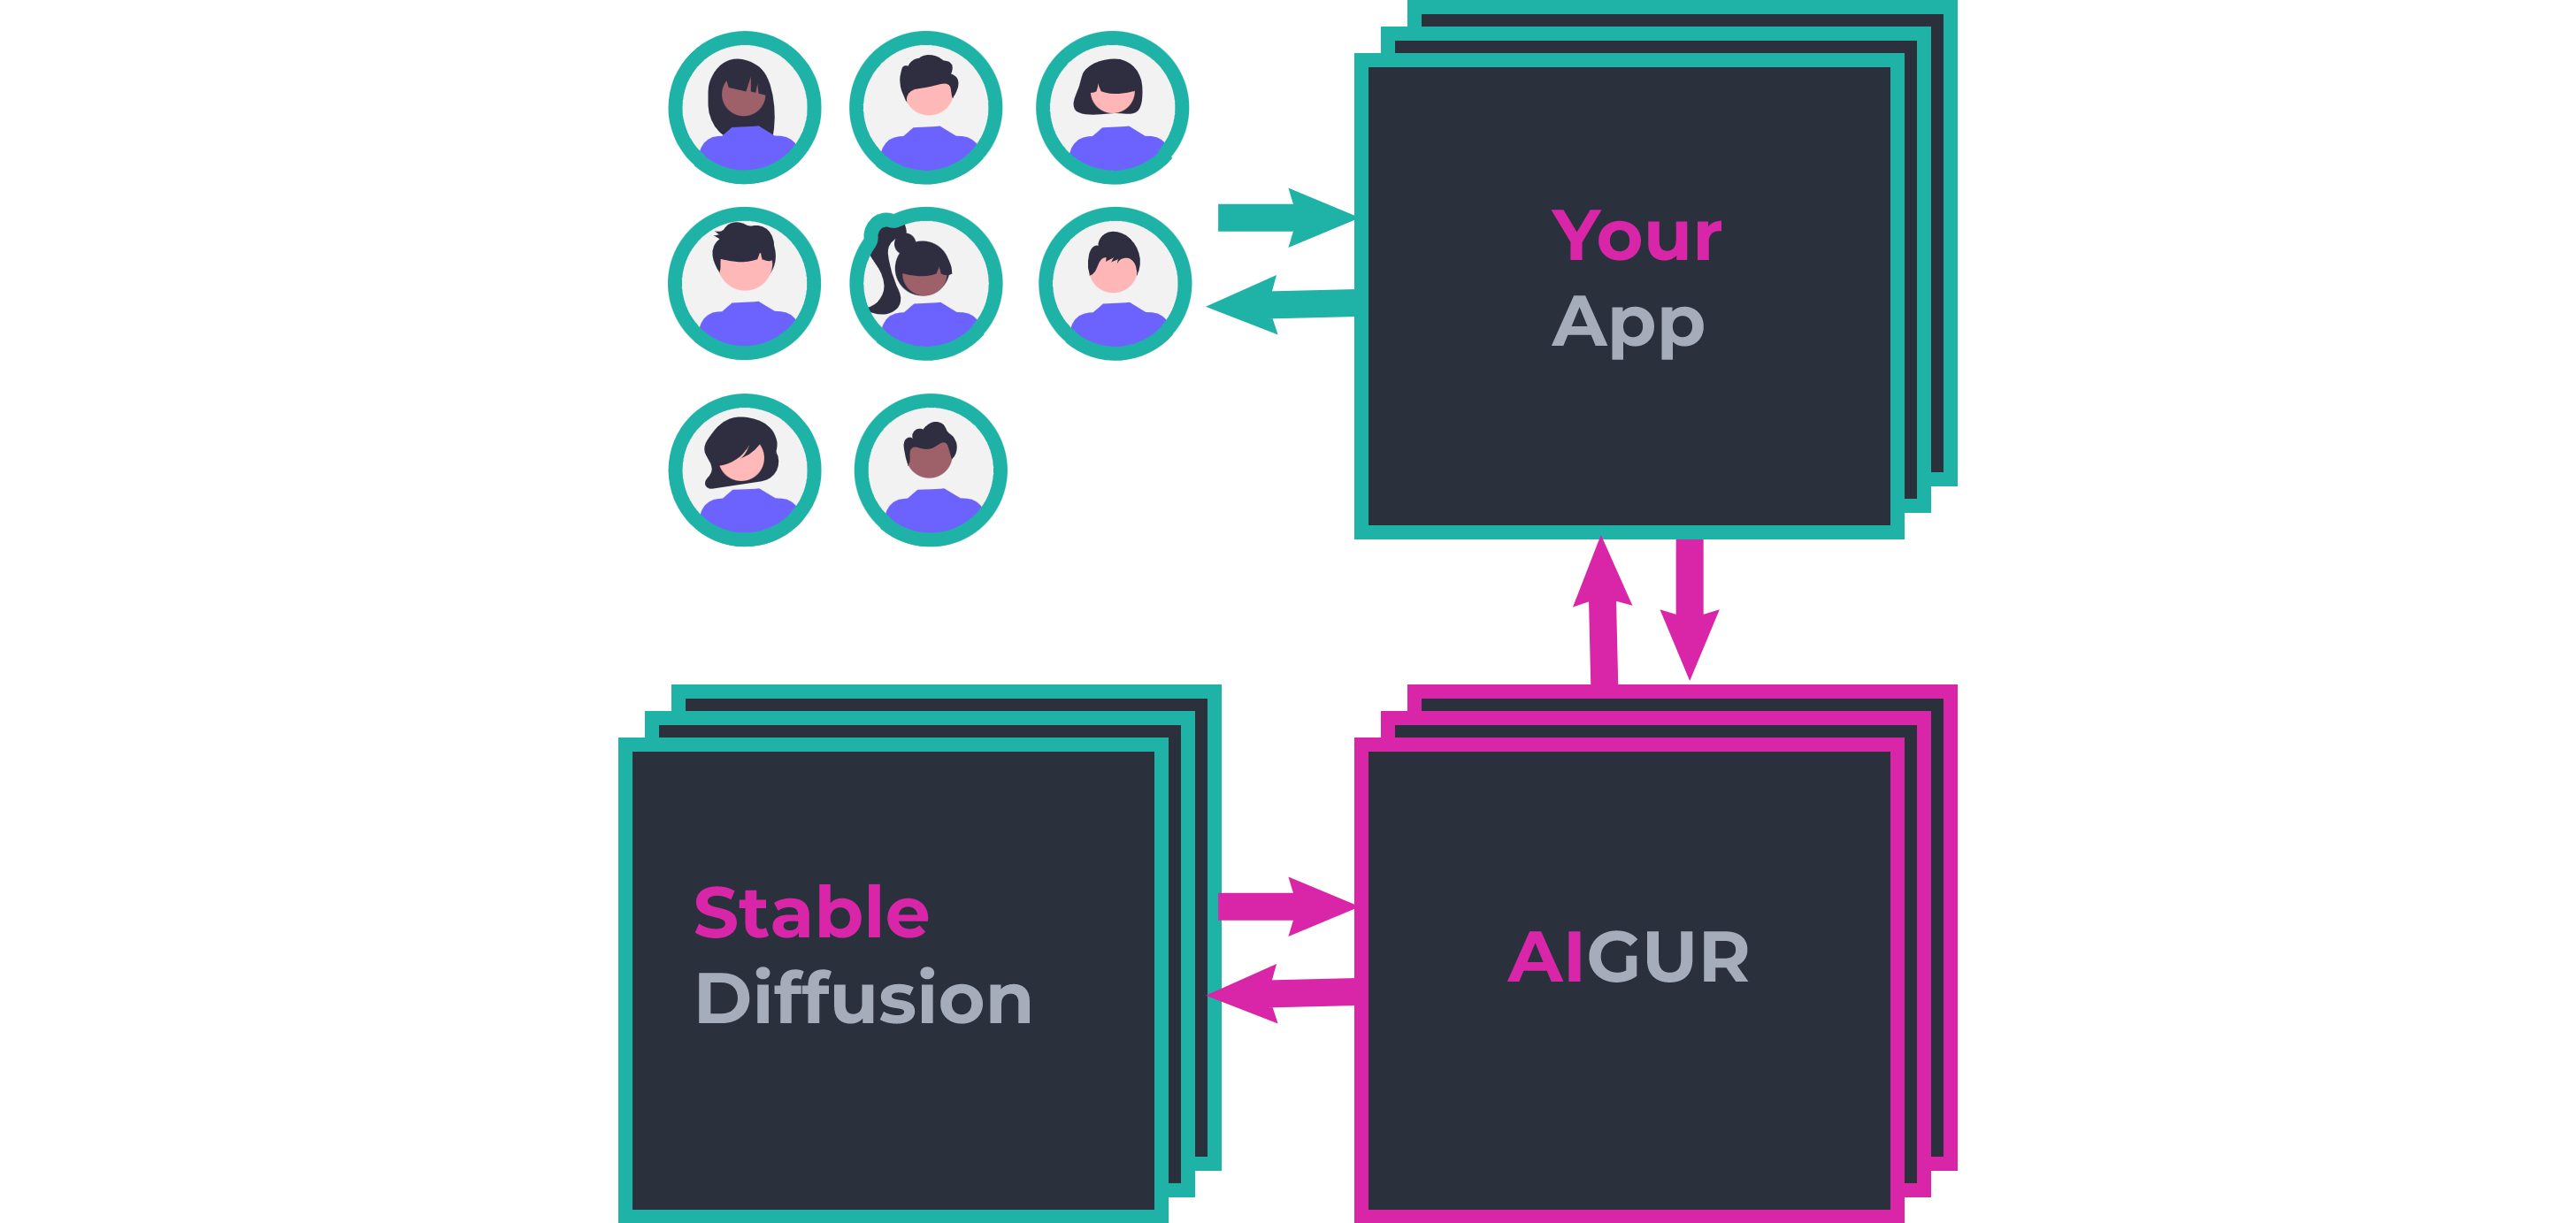 AIGUR - Построить многопользовательские генеративные приложения на основе ИИ на основе